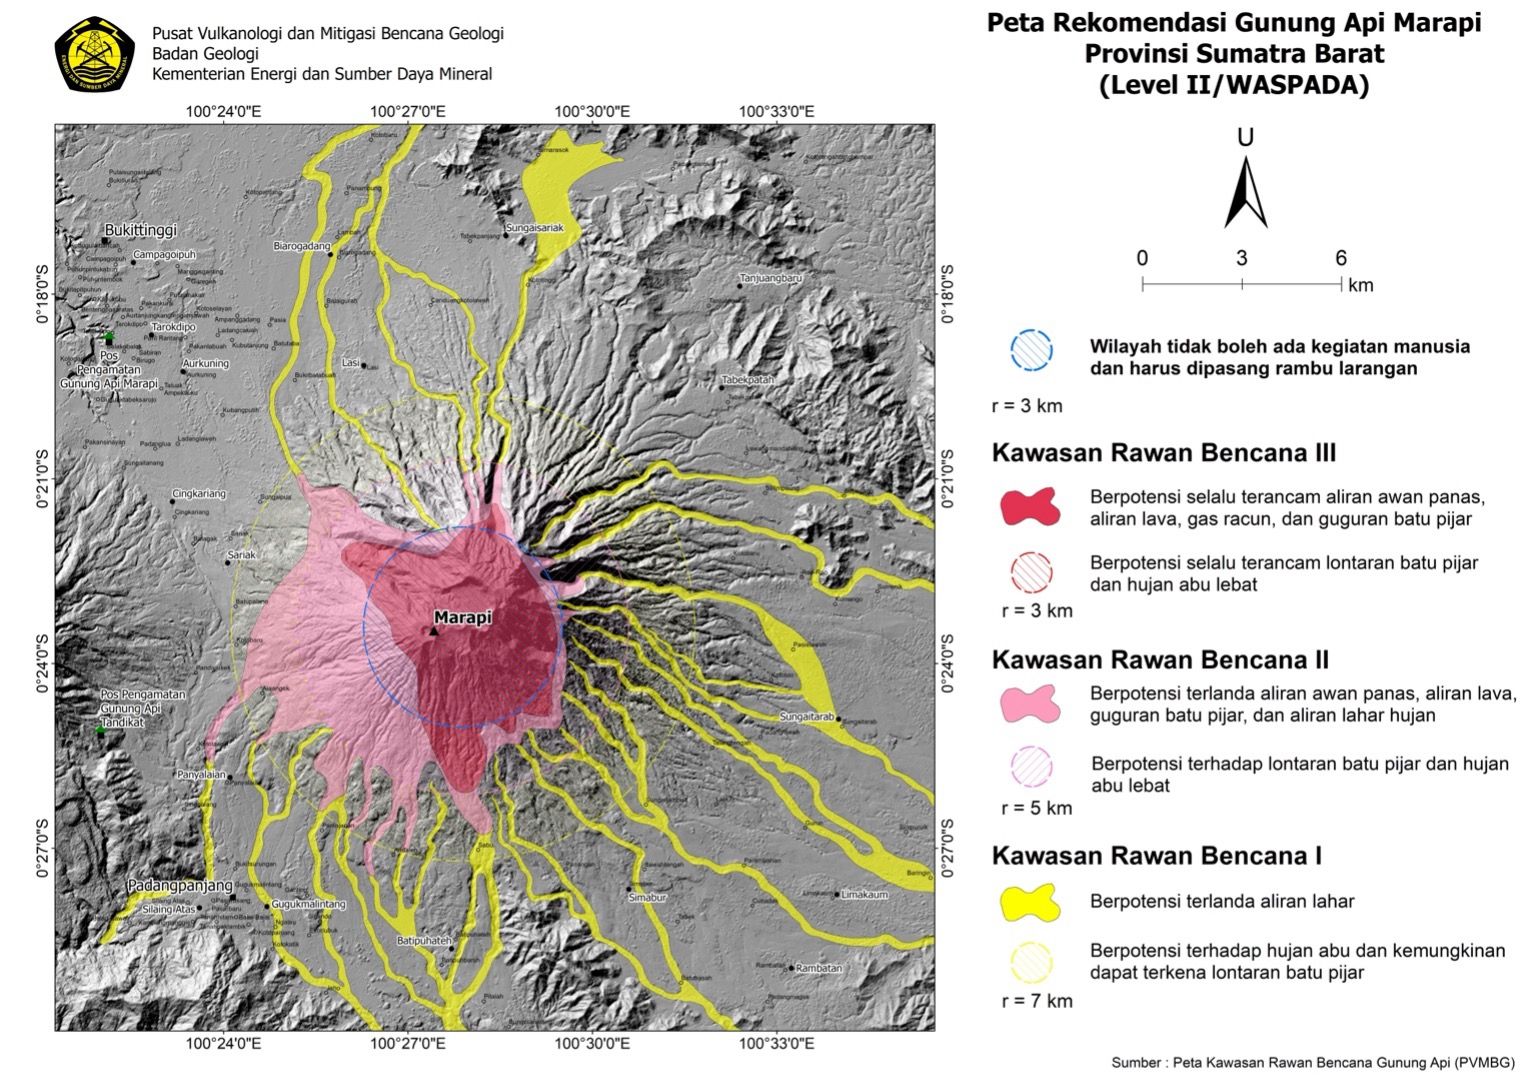 Peta Kawasan Rawan Bencana (KRB) yang diterbitkan pihak Pusat Vulkanologi dan Mitigasi Bencana Geologi (PVMBG) terkait Erupsi Gunung Marapi di Agam Sumatera Barat